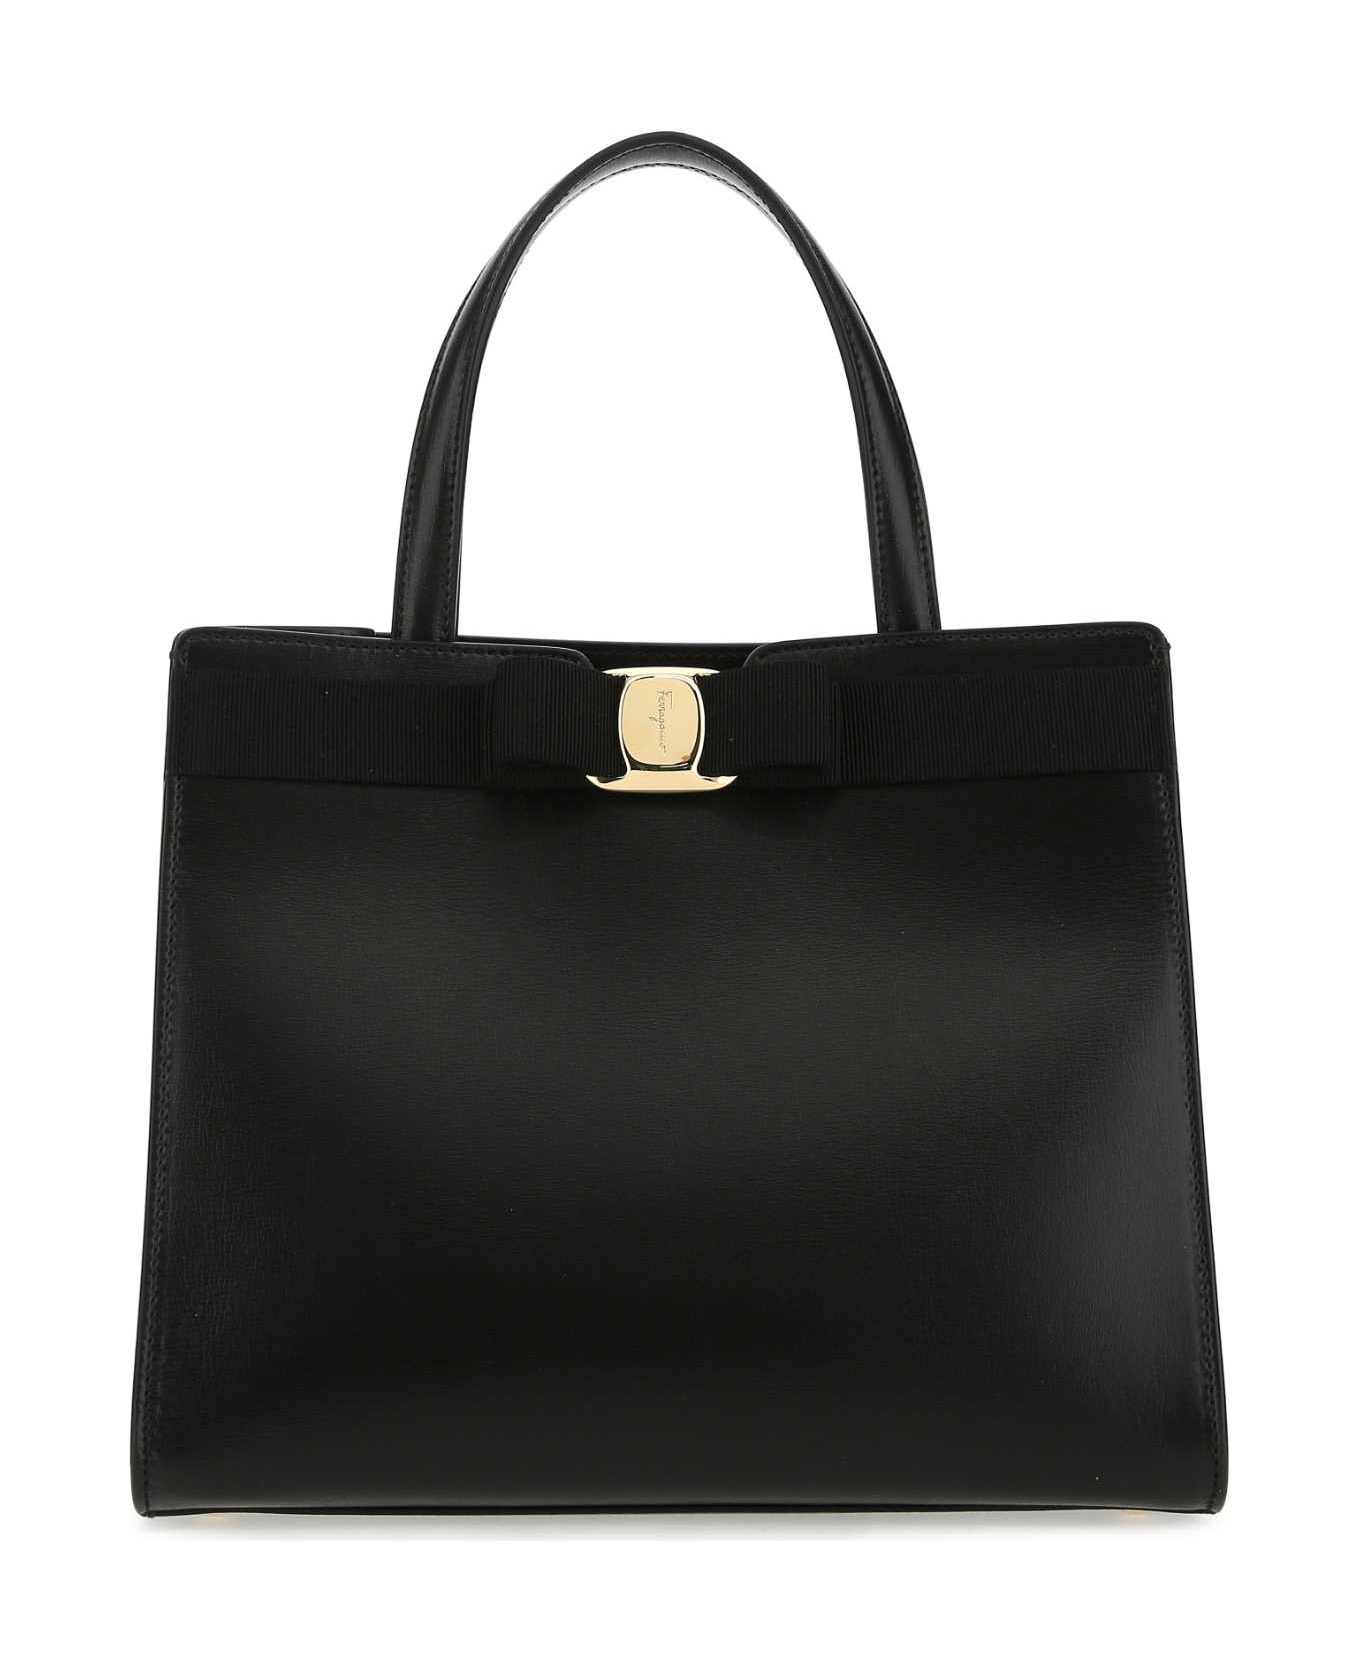 Ferragamo Black Leather Handbag - NERO